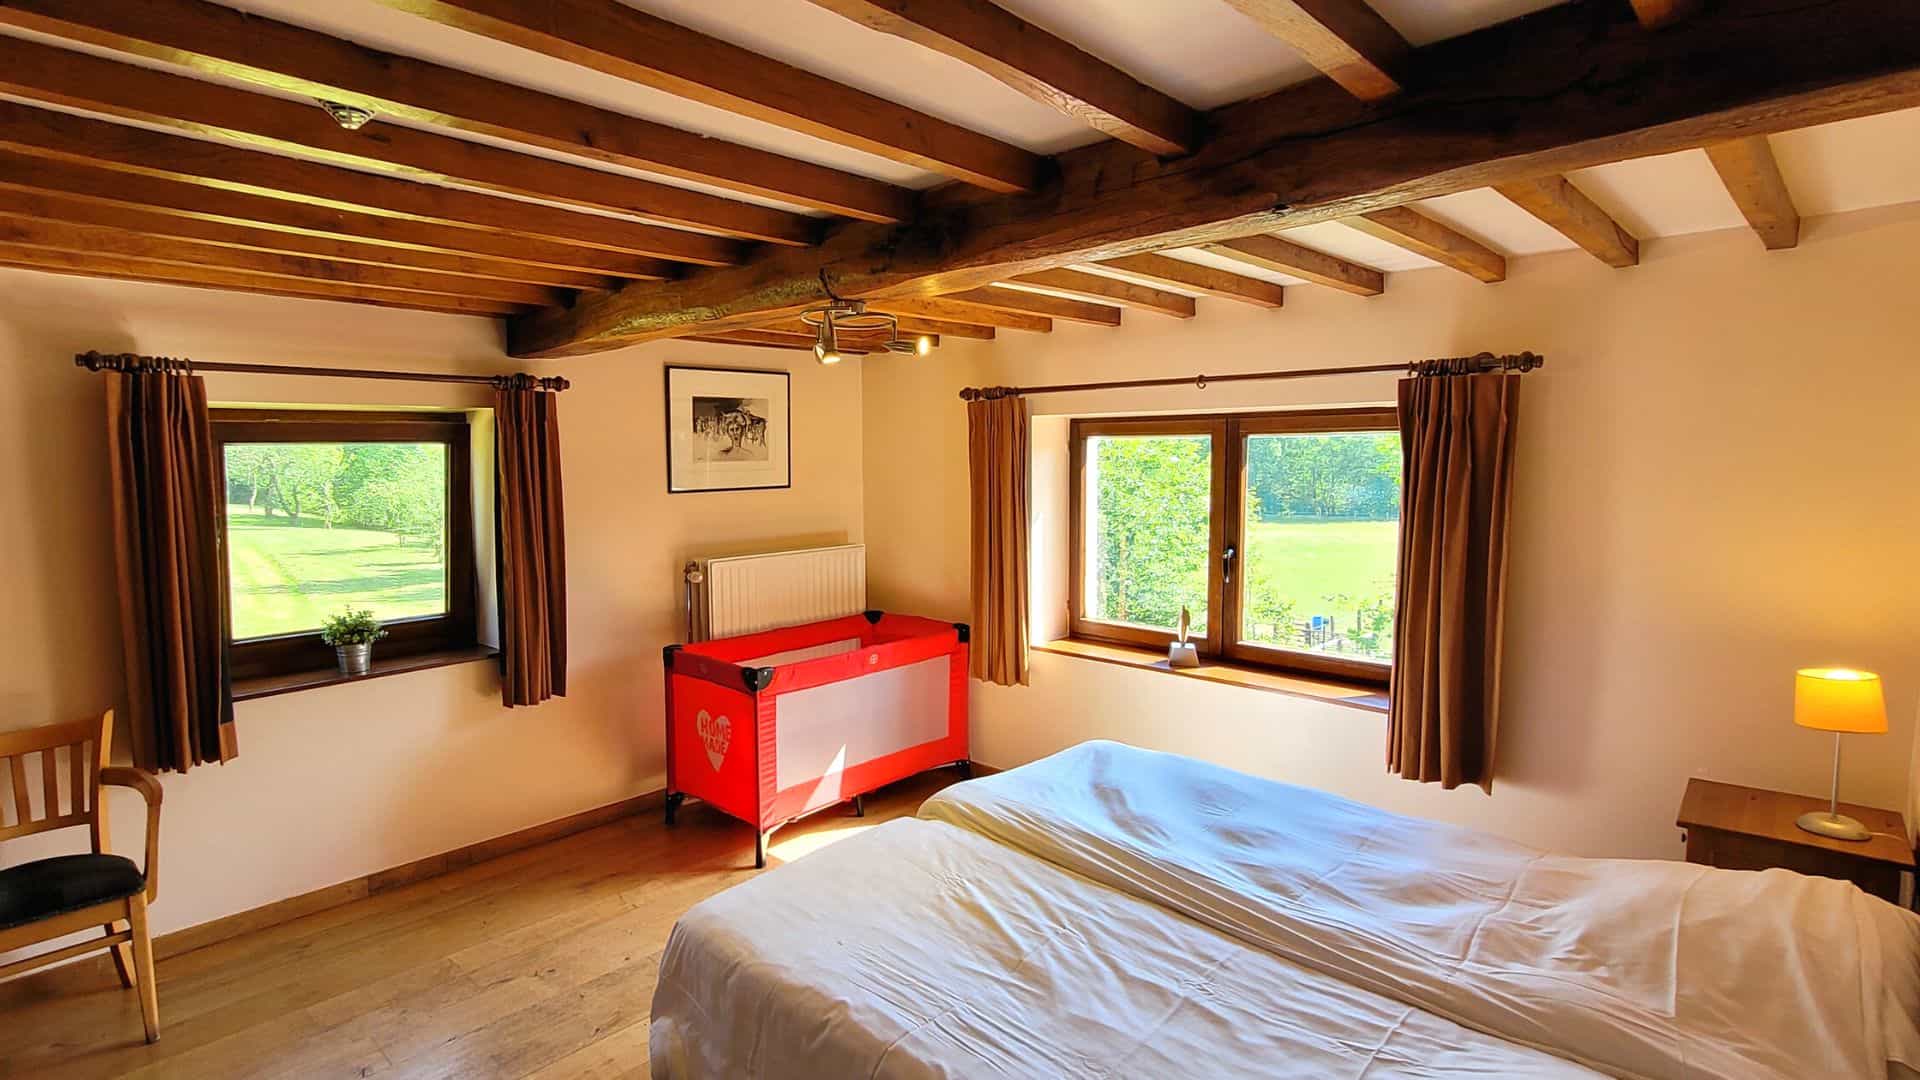 Grote vakantiehuis in de Ardennen met 8 kamers